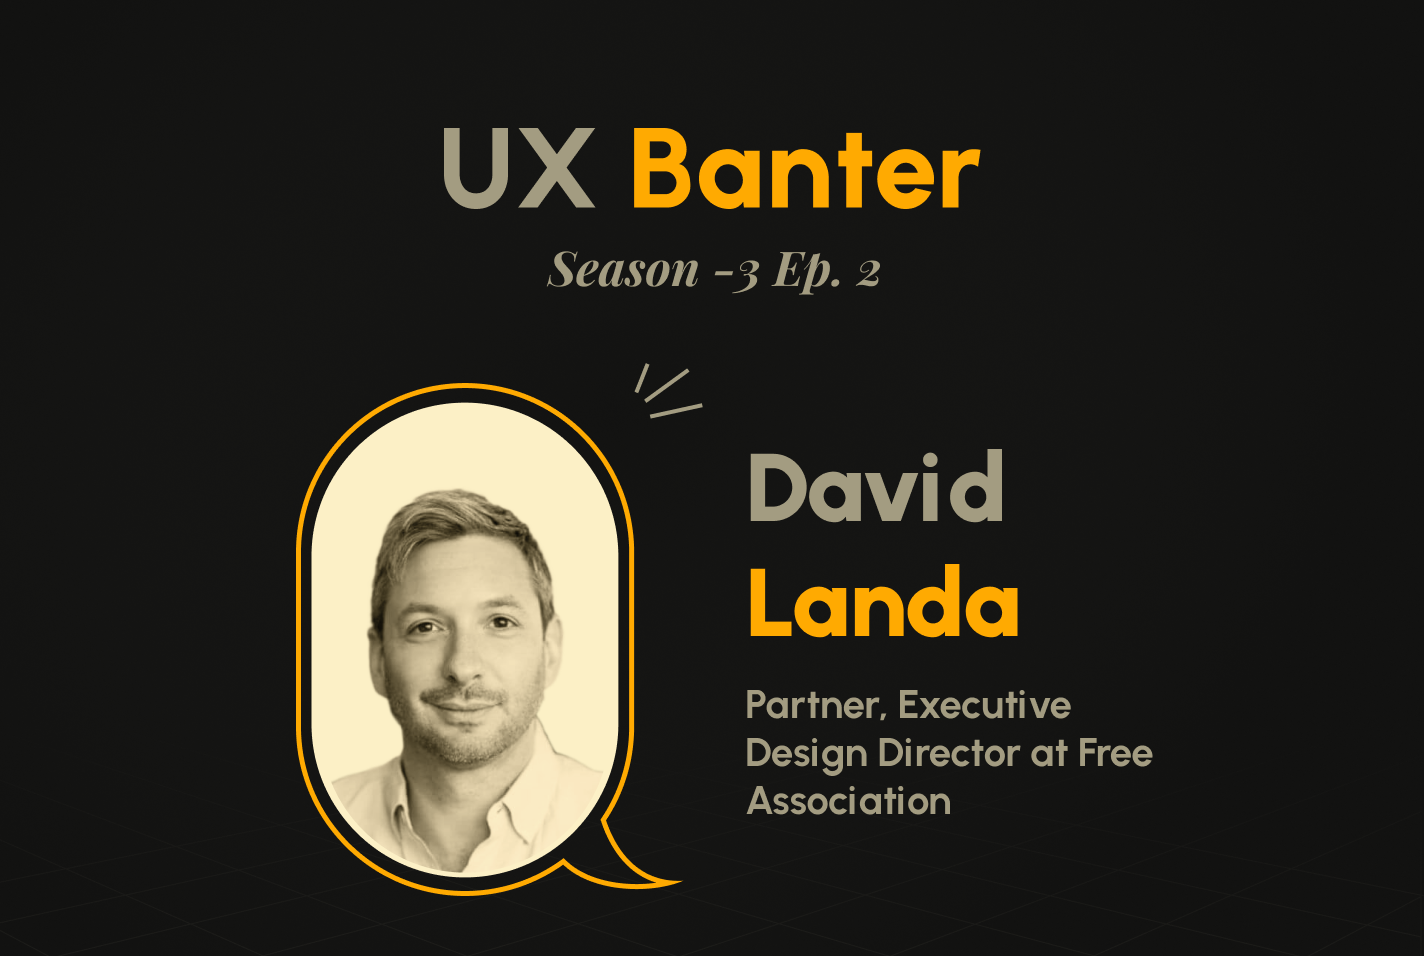 UX Banter Season 3: Episode 2 with David Landa